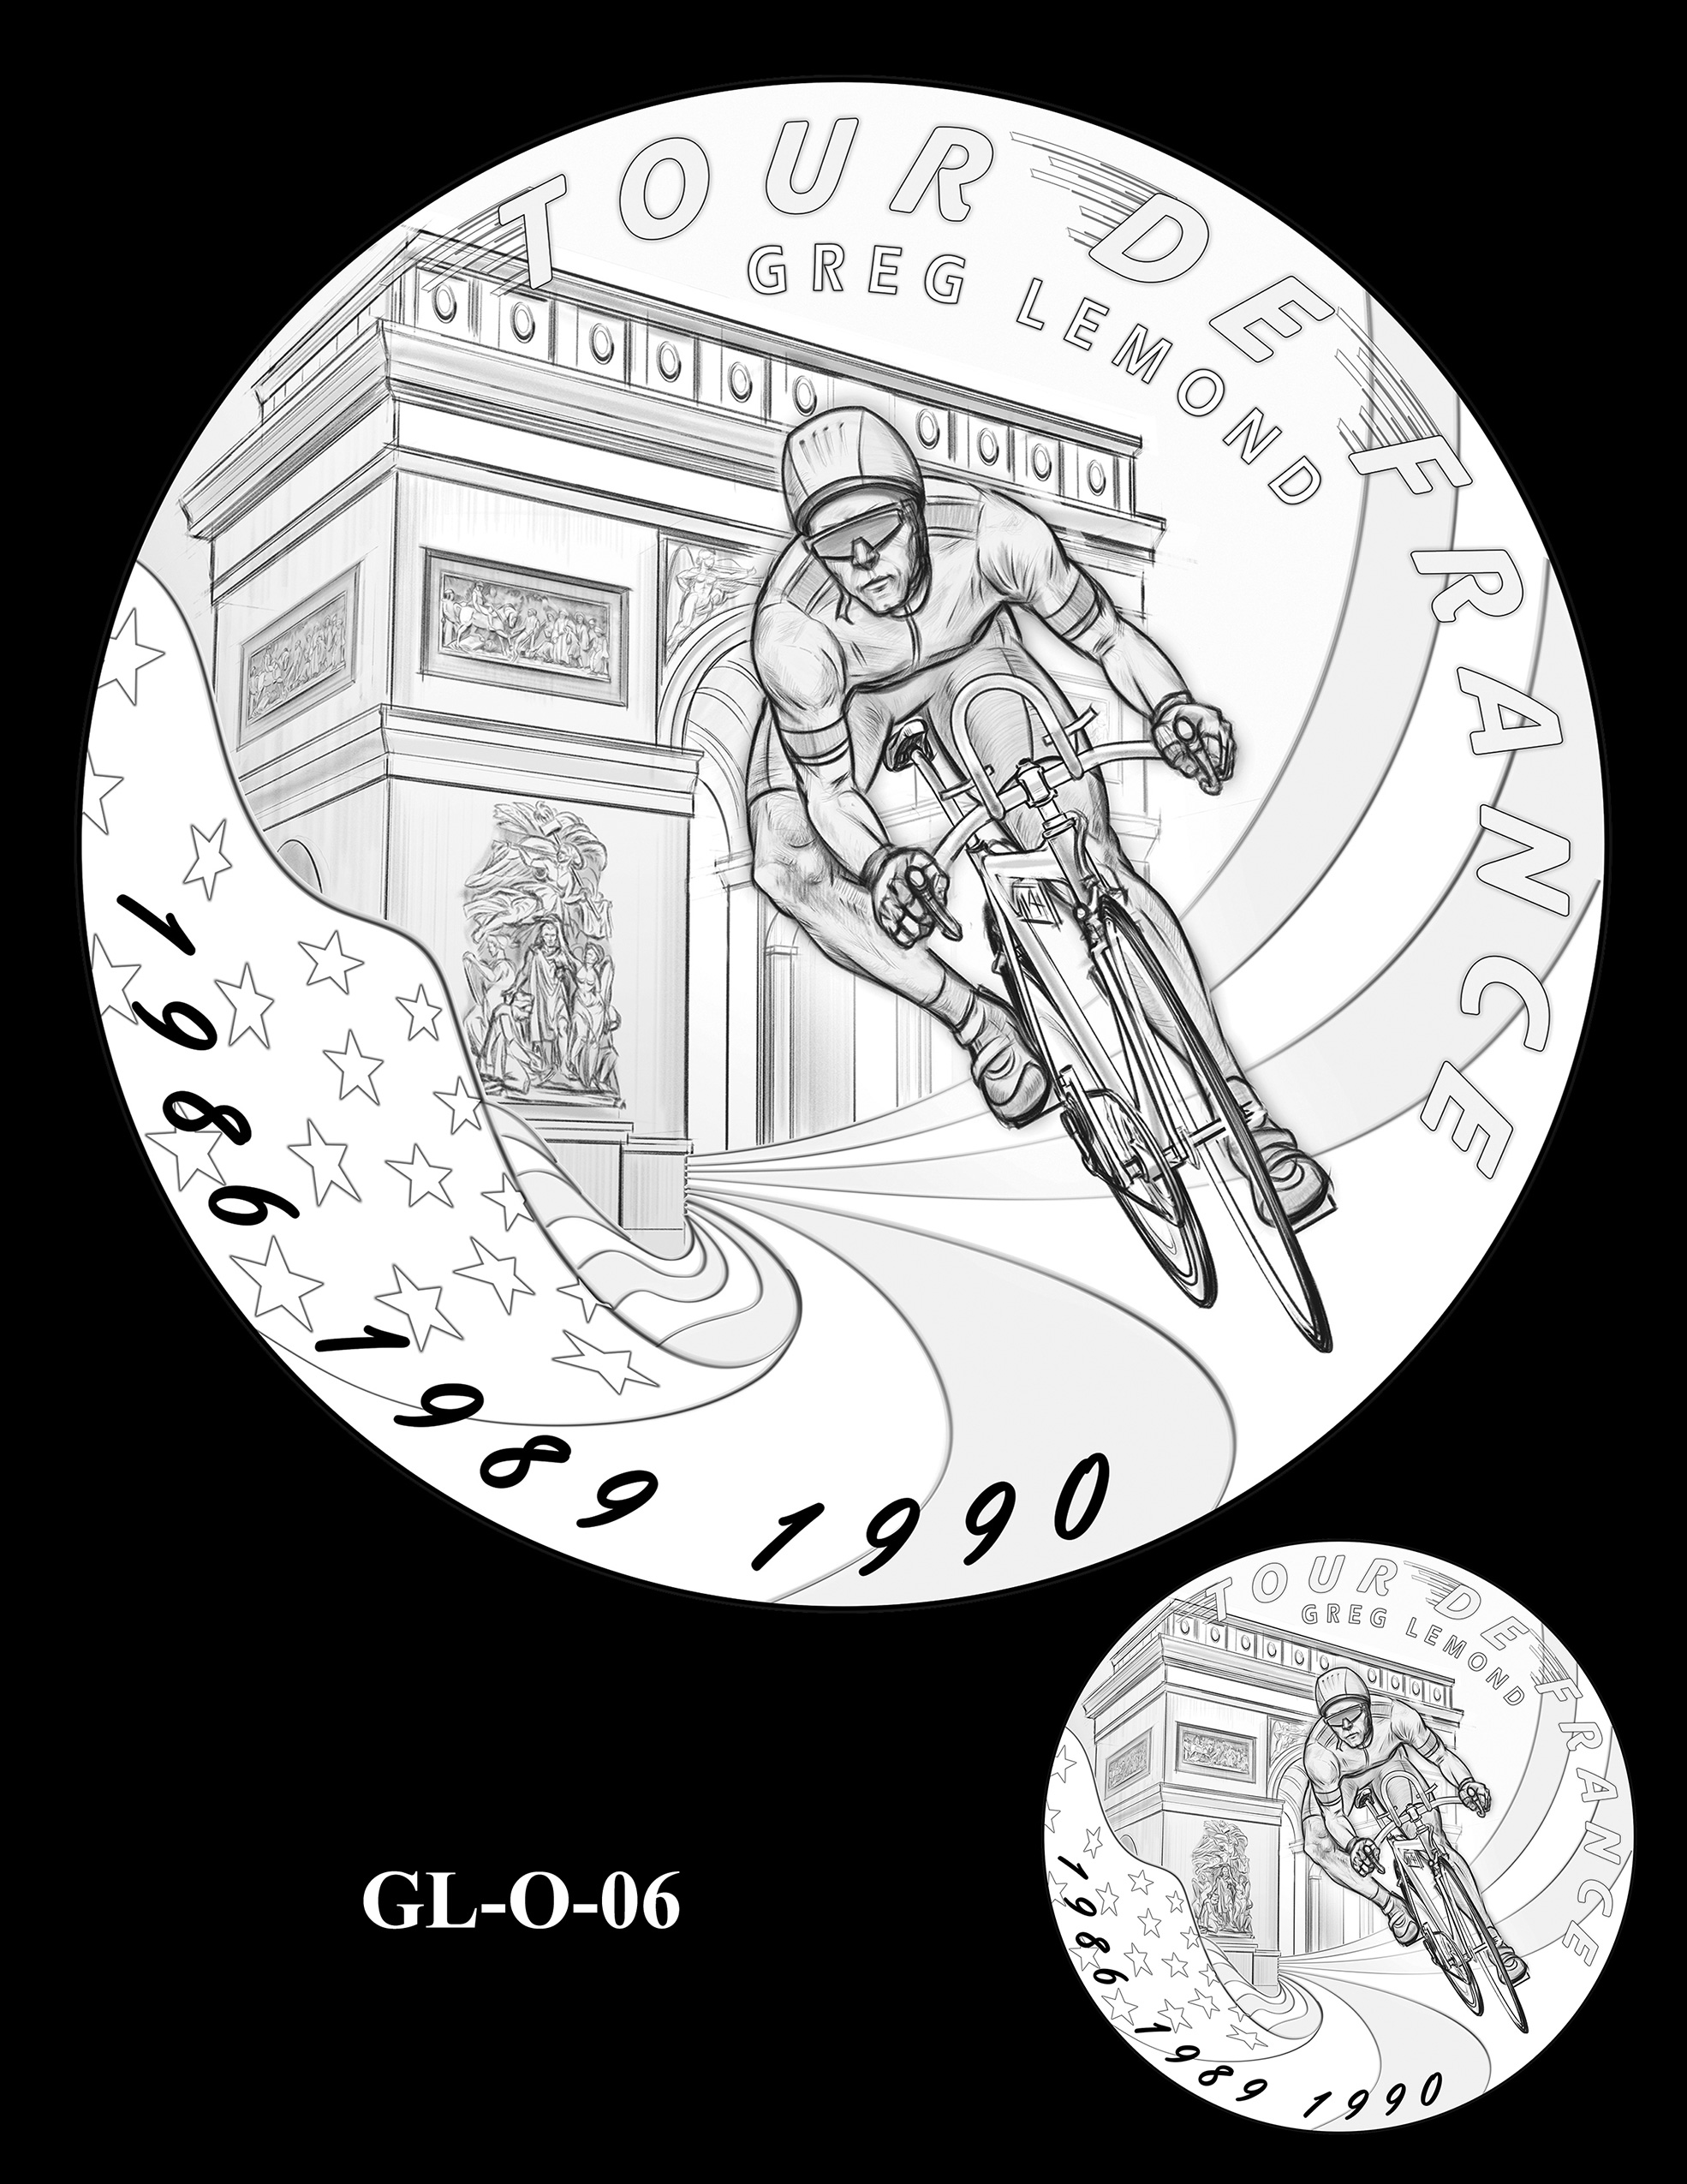 GL-O-06 -- Greg LeMond Congressional Gold Medal